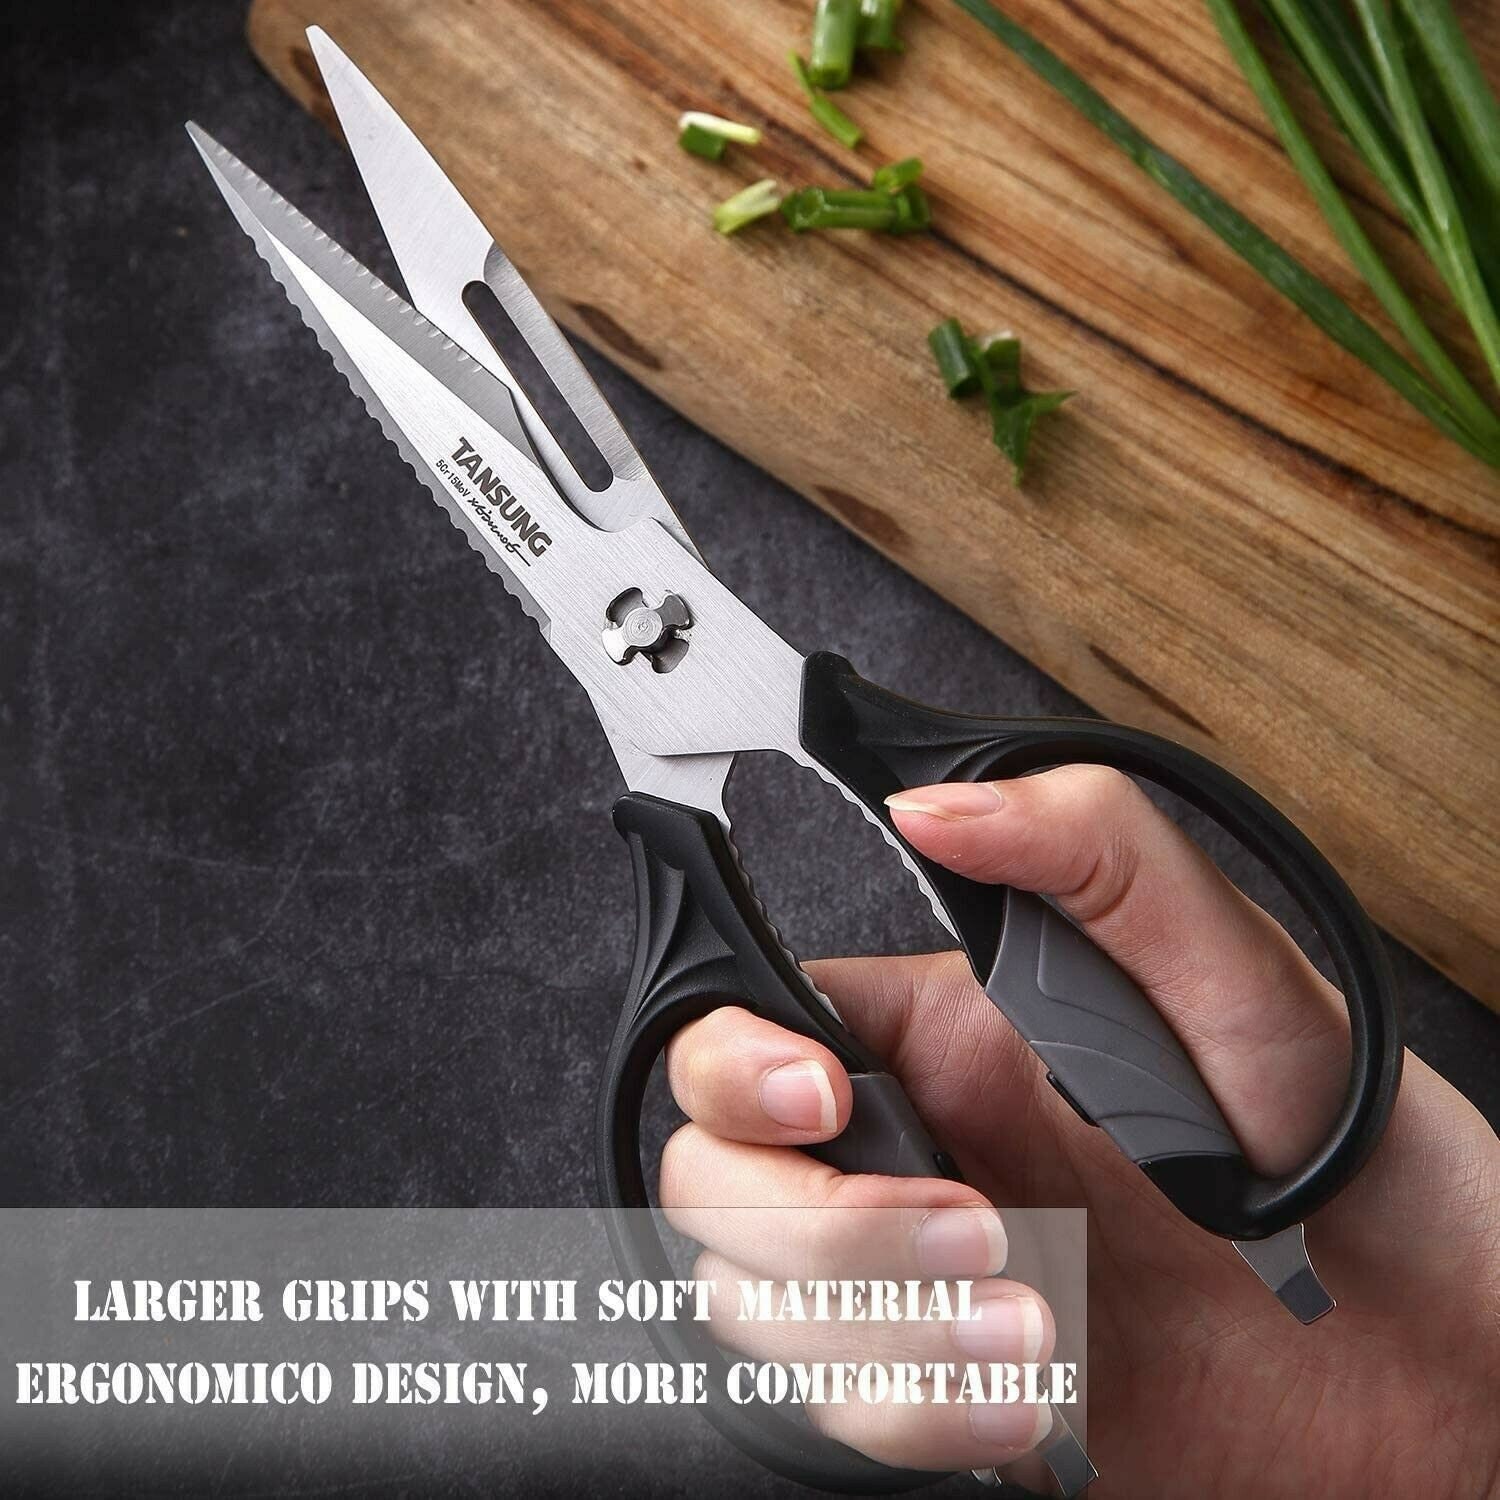 TANSUNG Kitchen Shears Scissors, Come-apart Anti-rust Multi-purpose Black 